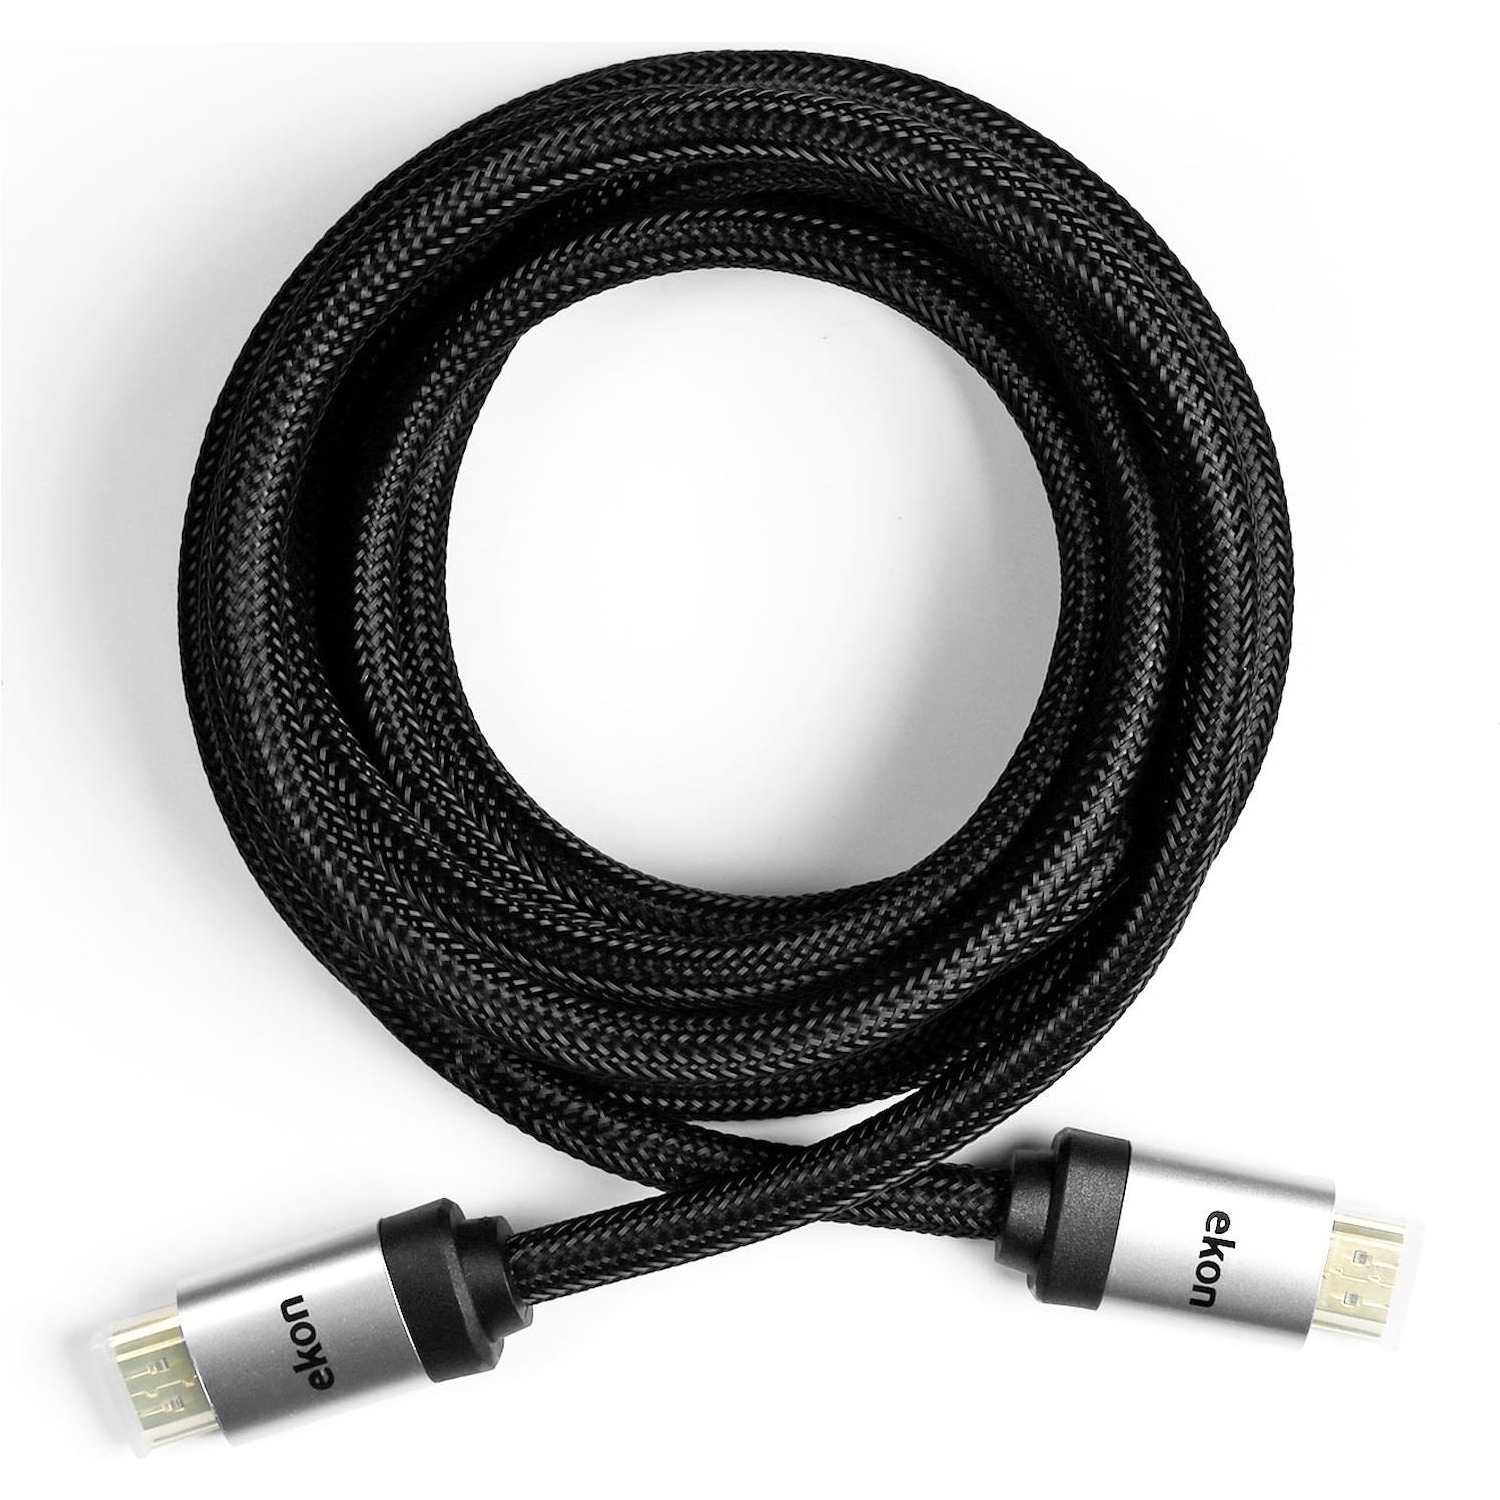 Immagine per Cavo HDMI v.2.0 alta velocità con canale Ethernet e nuclei in ferrite anti disturbo,connettori da DIMOStore